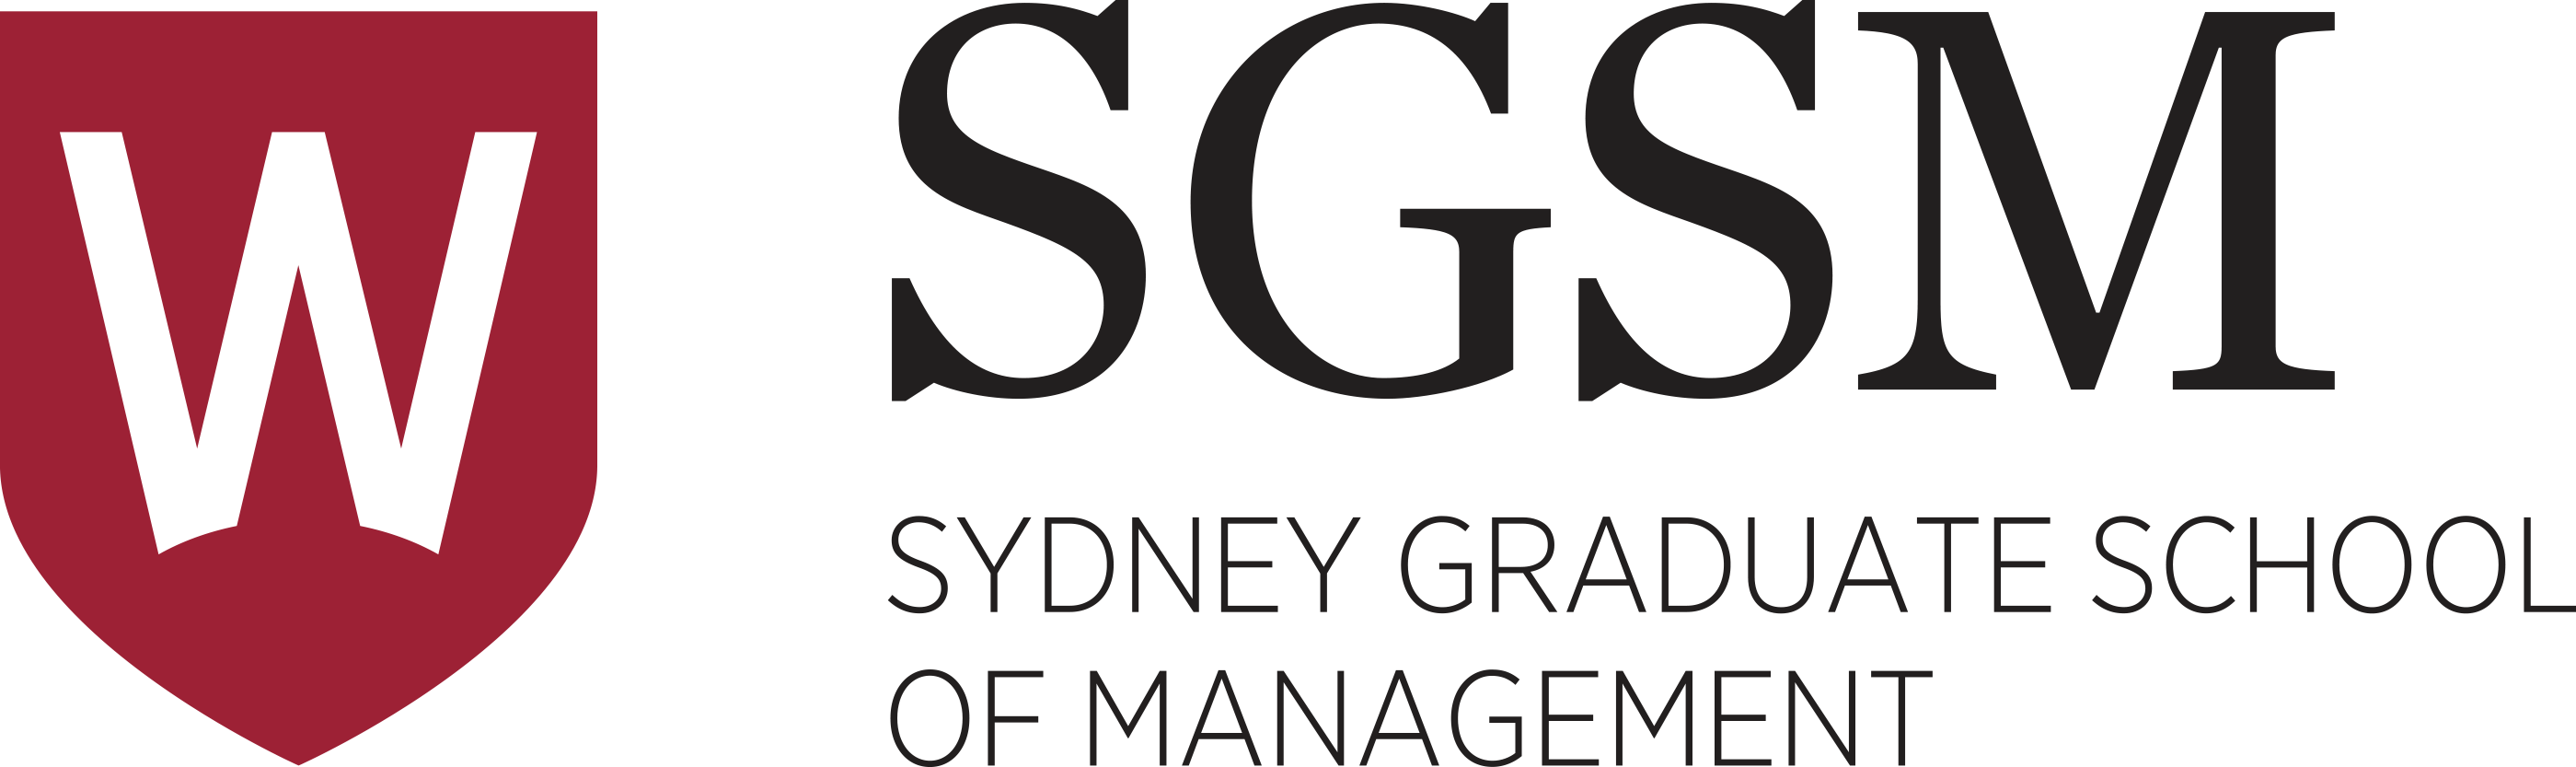 SYDNEY GRADUATE SCHOOL OF MANAGEMENT (SGSM)